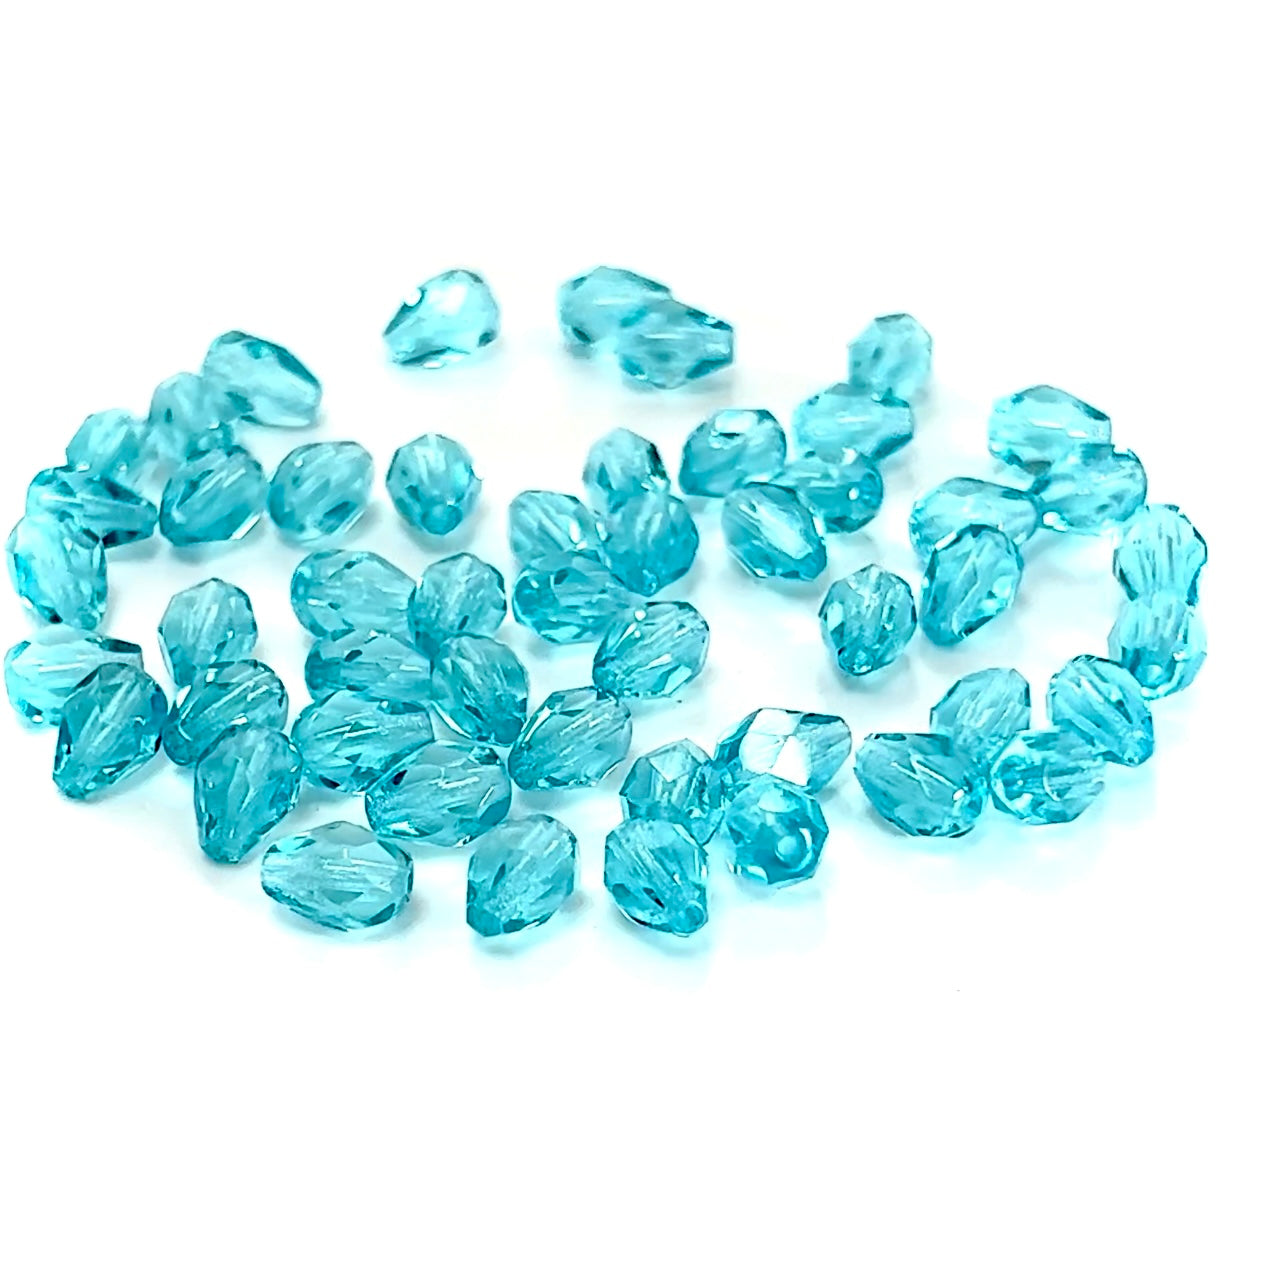 Czech Glass Pear Shaped Fire Polished Beads 8x6mm Aqua Bohemica blue Tear Drops, 50 pieces, J035